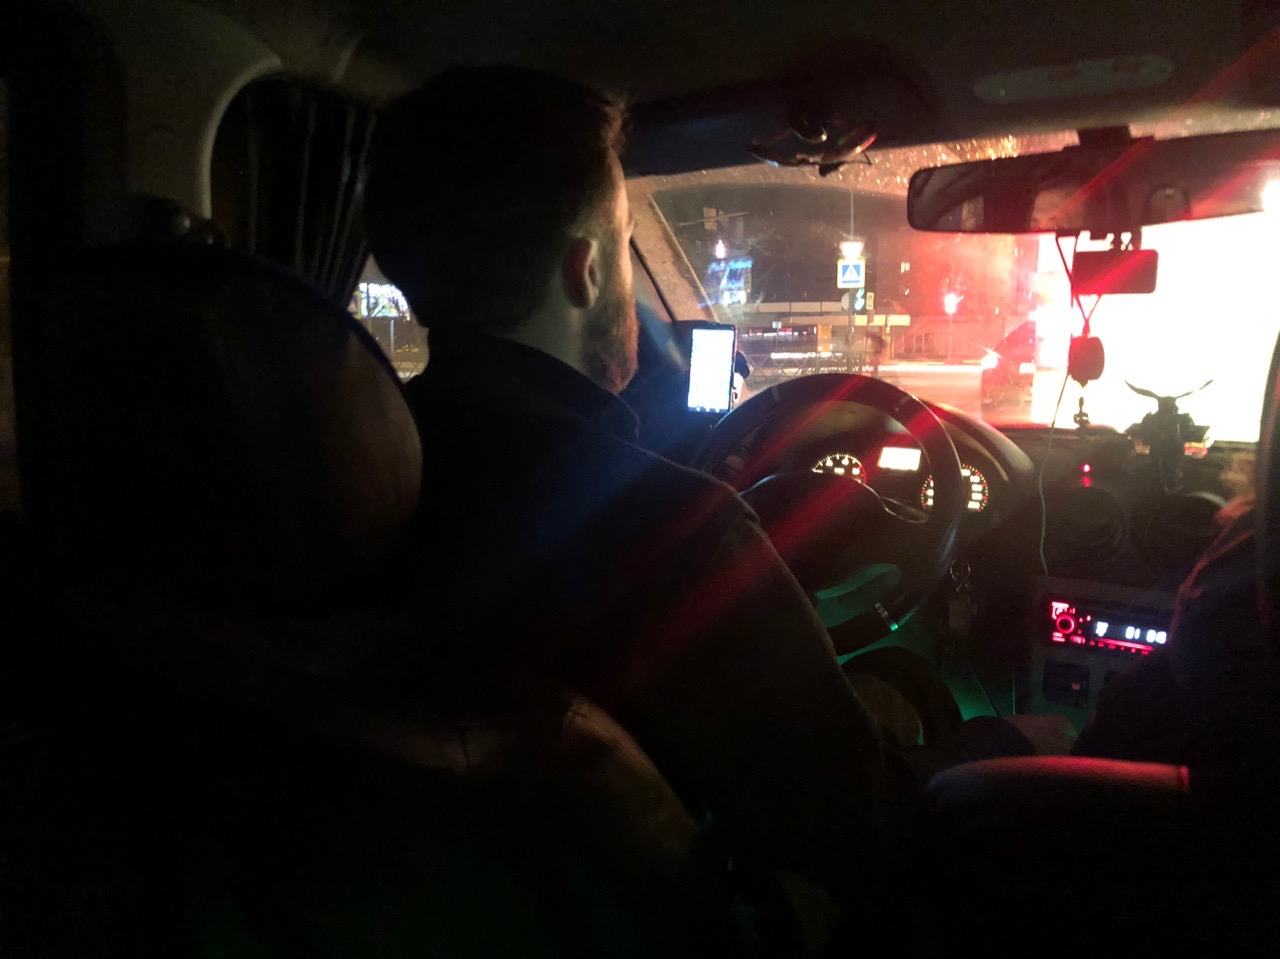 "Когда невежливо молчишь": яндекс-такси обнародовал оценки пассажирам